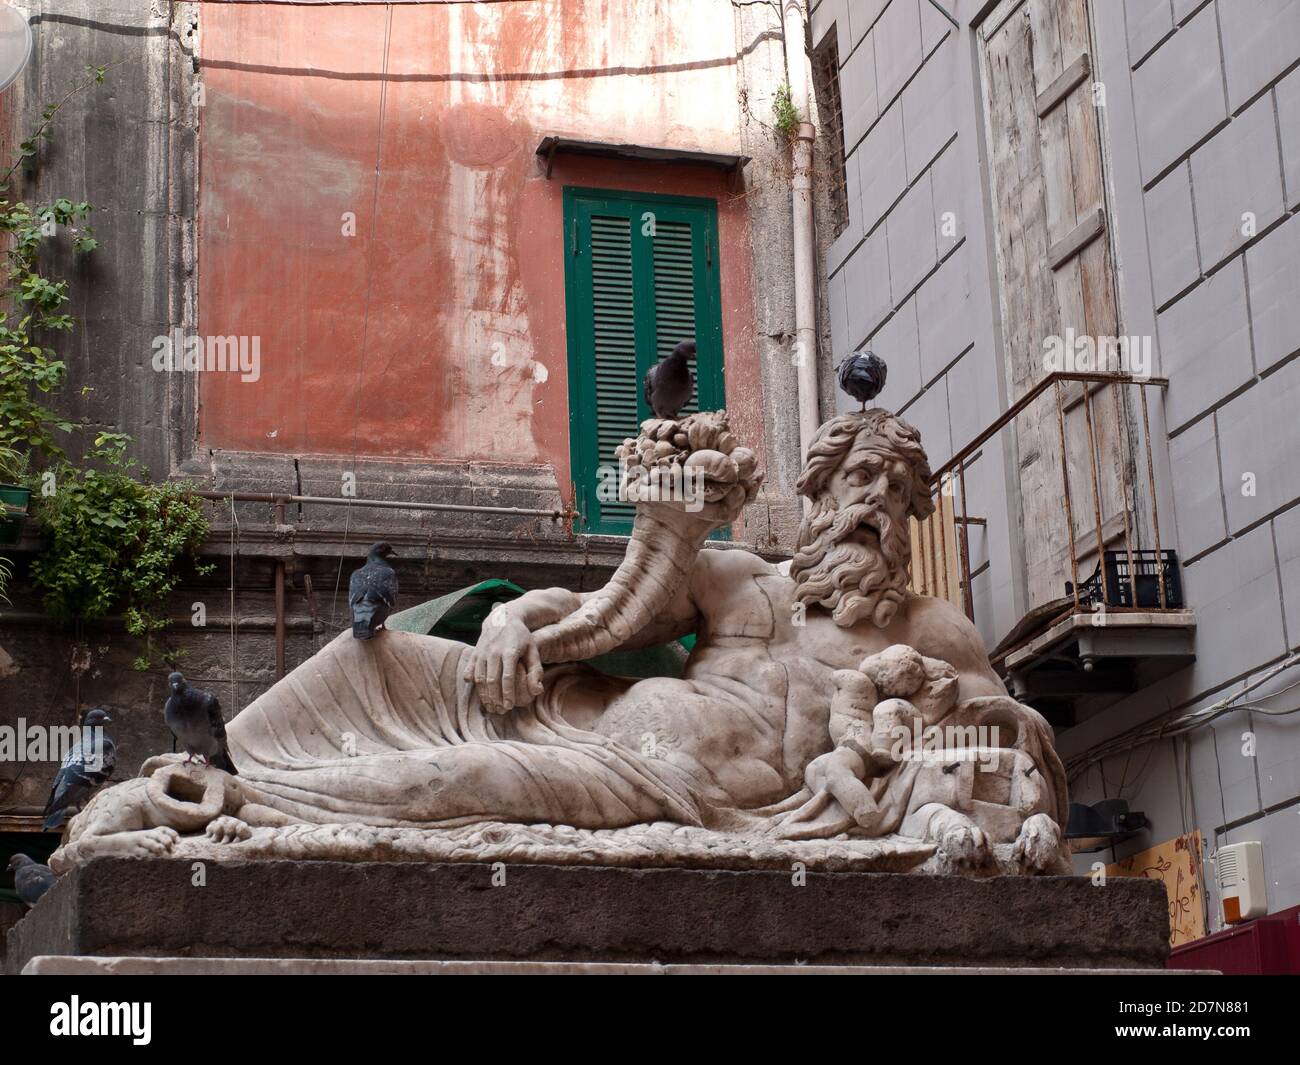 Napoli. Statua del Dio Nilo, scultura marmorea di epoca romana databile tra il II e III secolo d.C. Foto Stock